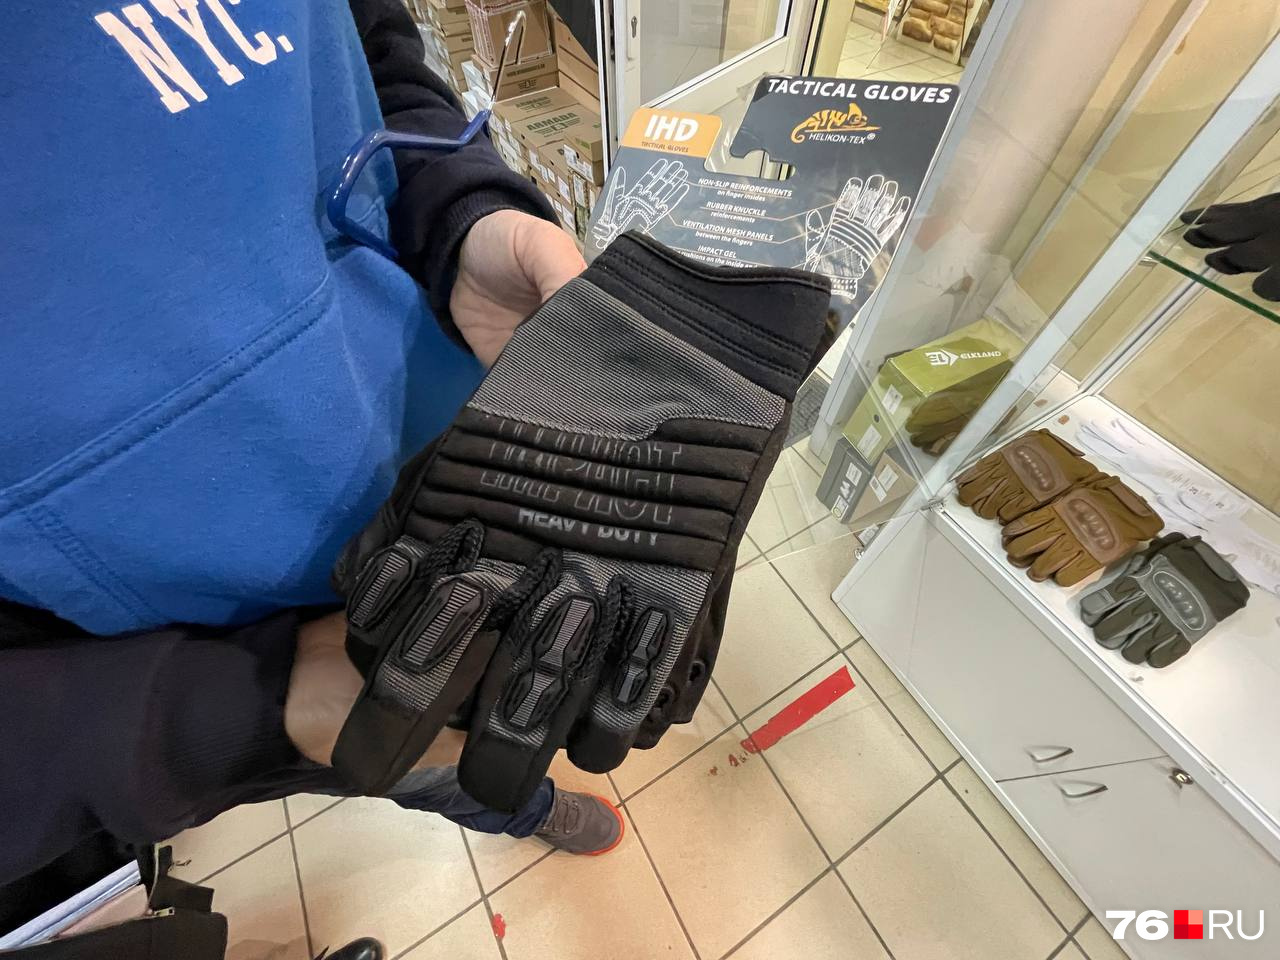 Тактические перчатки — защищают от холода и при этом позволяют хорошо чувствовать курок. Их почти все уже раскупили